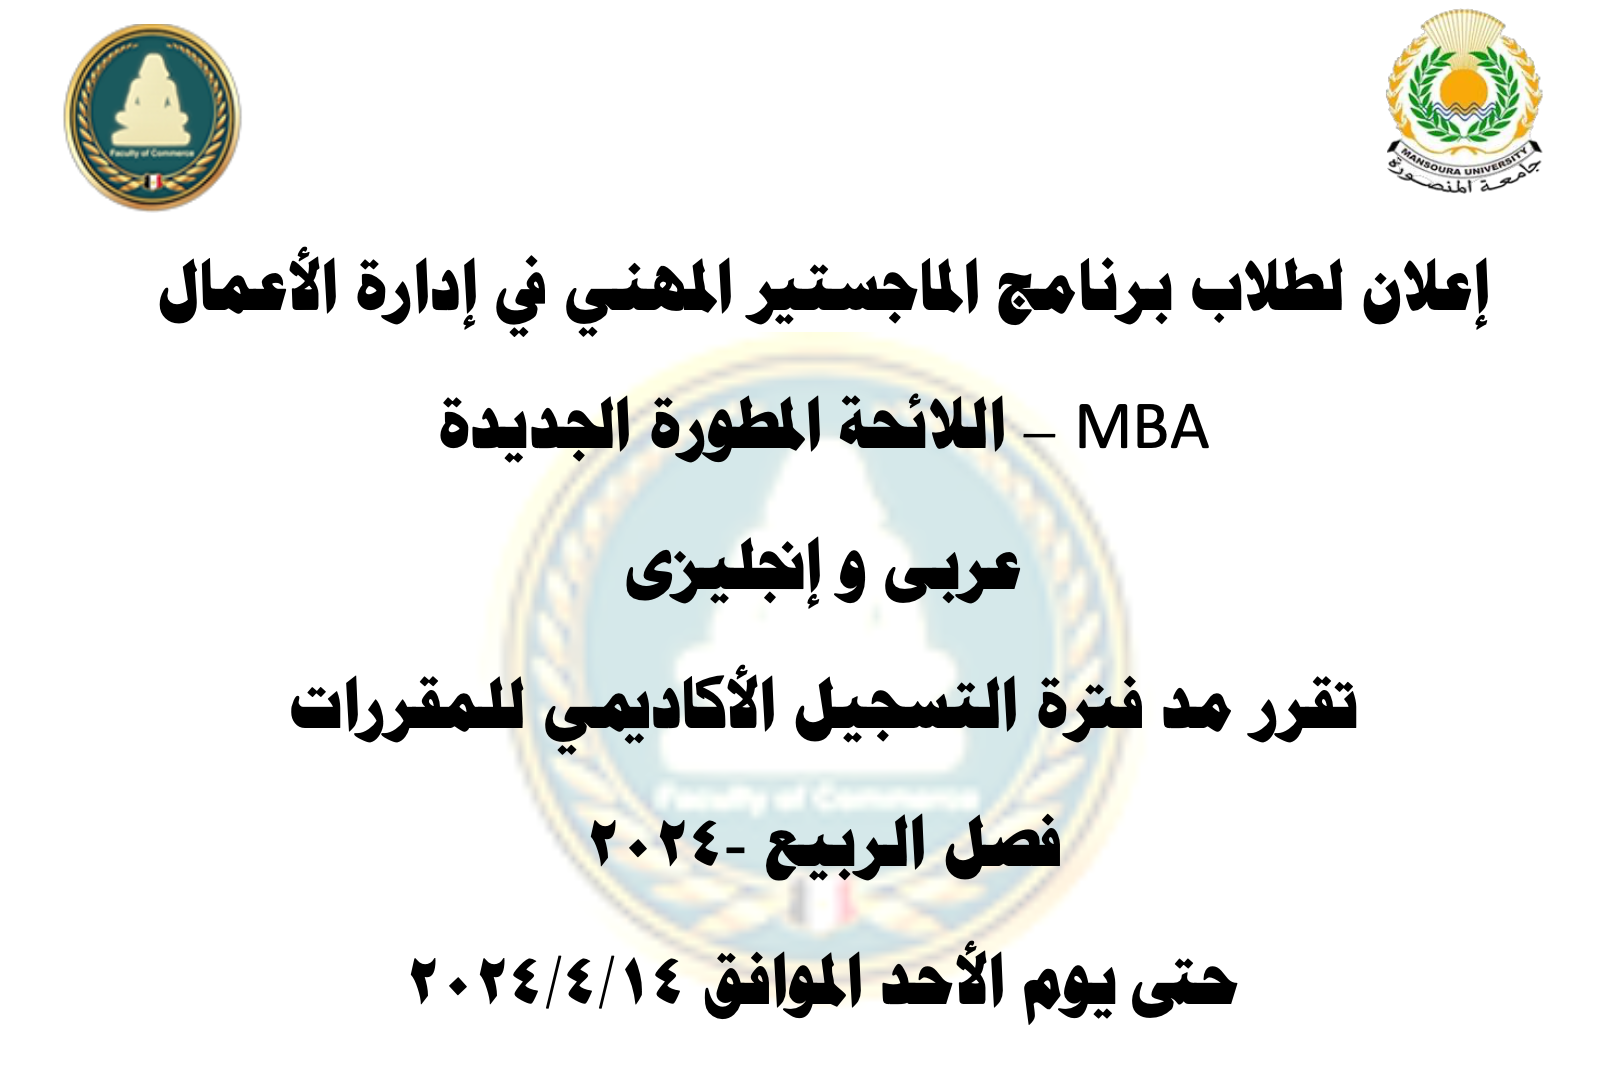 مد فترة تسجيل المقررات لبرنامج  MBA - اللائحة المطورة عربي و انجليزي